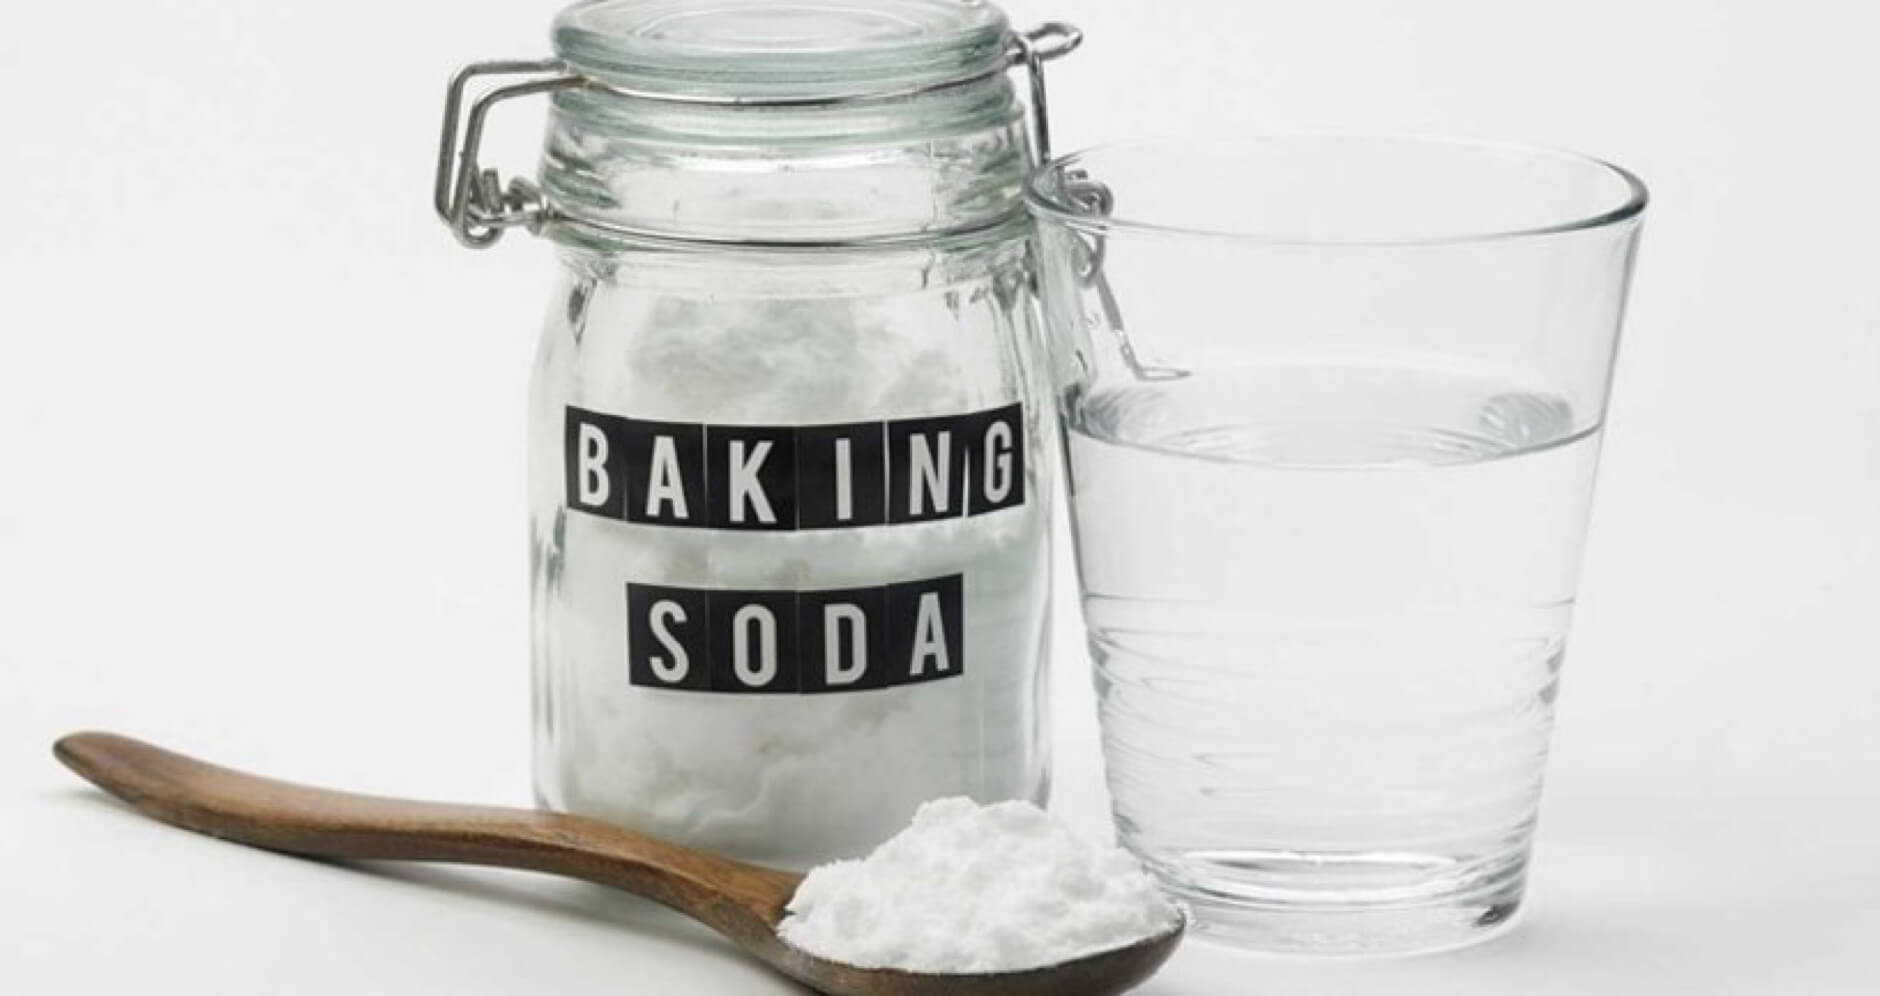 Đâu là cách xử lý đệm bị đái dầm, nước tiểu động vật? Bạn có thể dùng baking soda